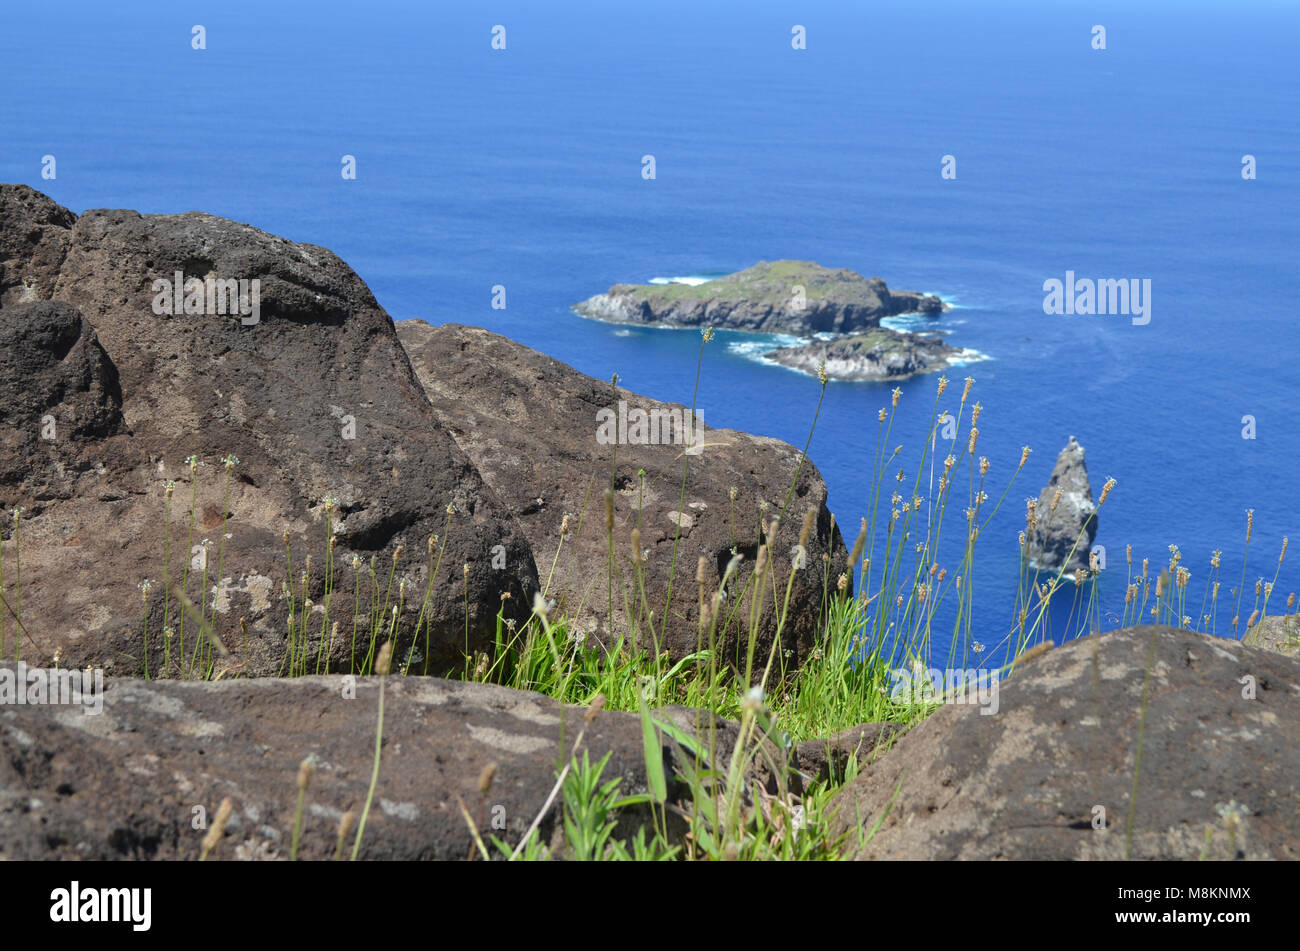 Motu Nui, Motu Iti e Motu UAE UAE di isolotti di origine vulcanica di Rapa Nui (l'isola di pasqua) Foto Stock